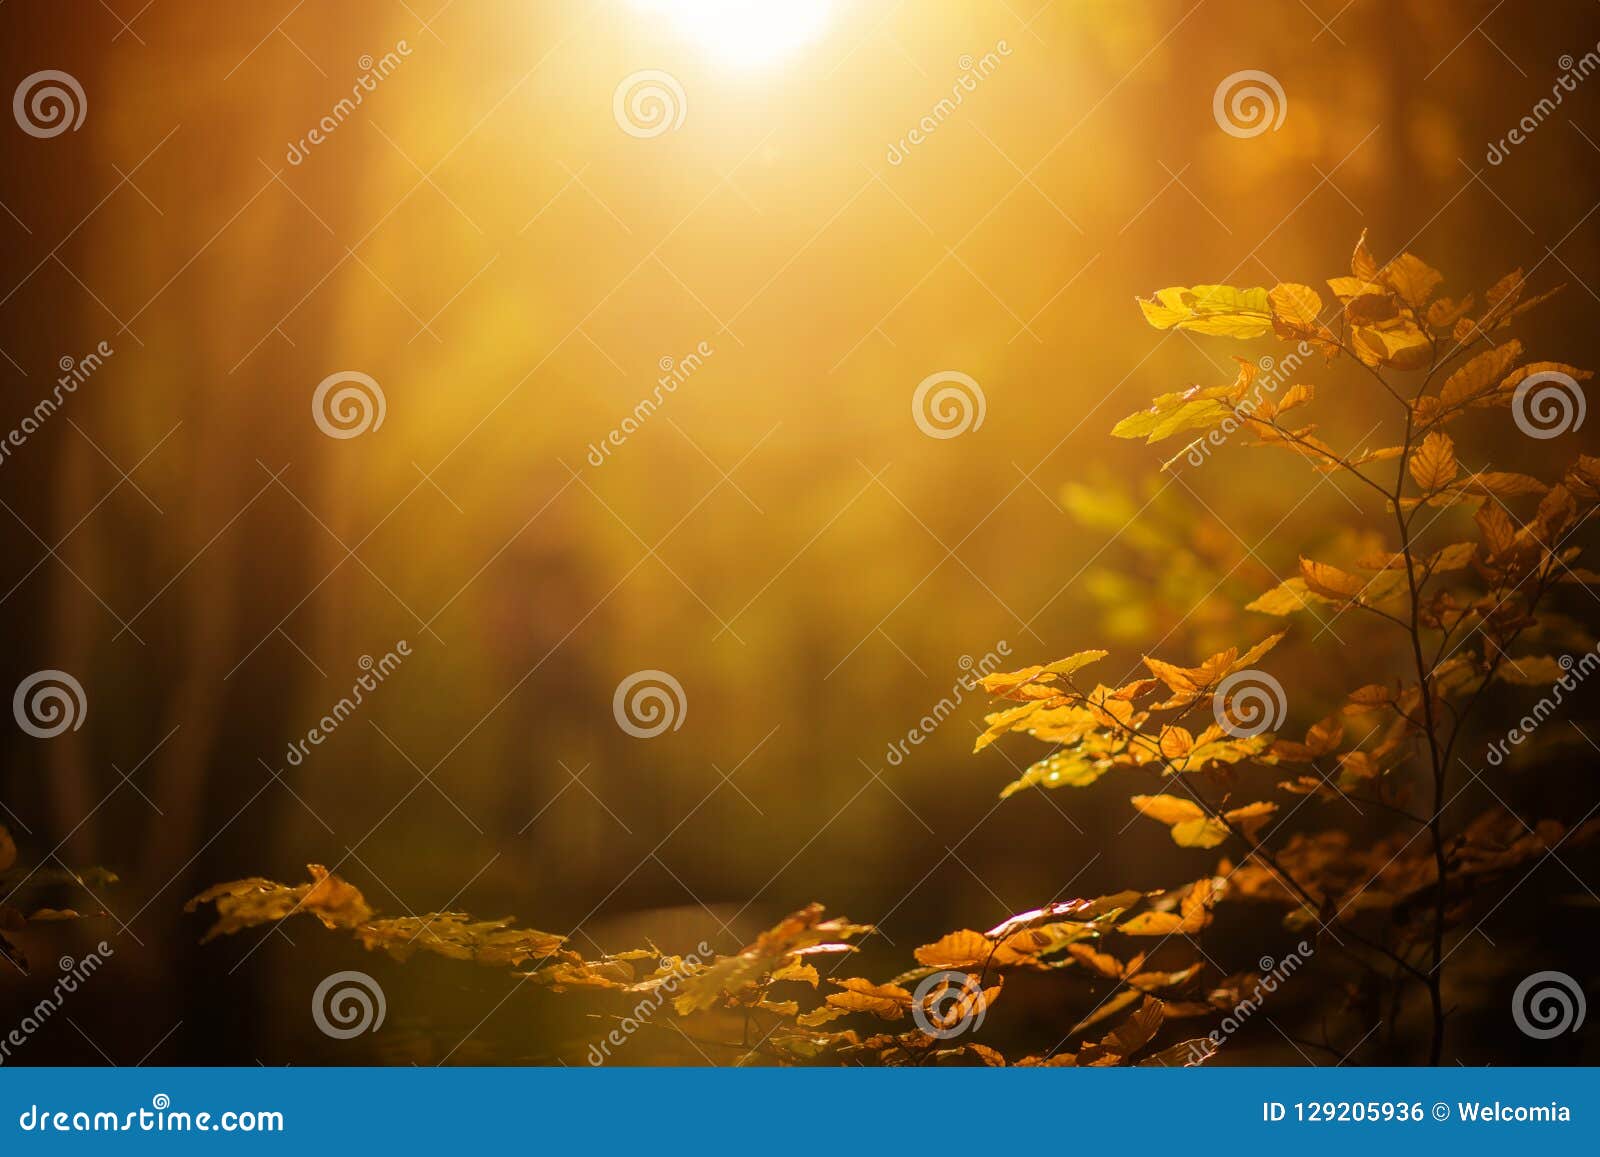 fall foliage background